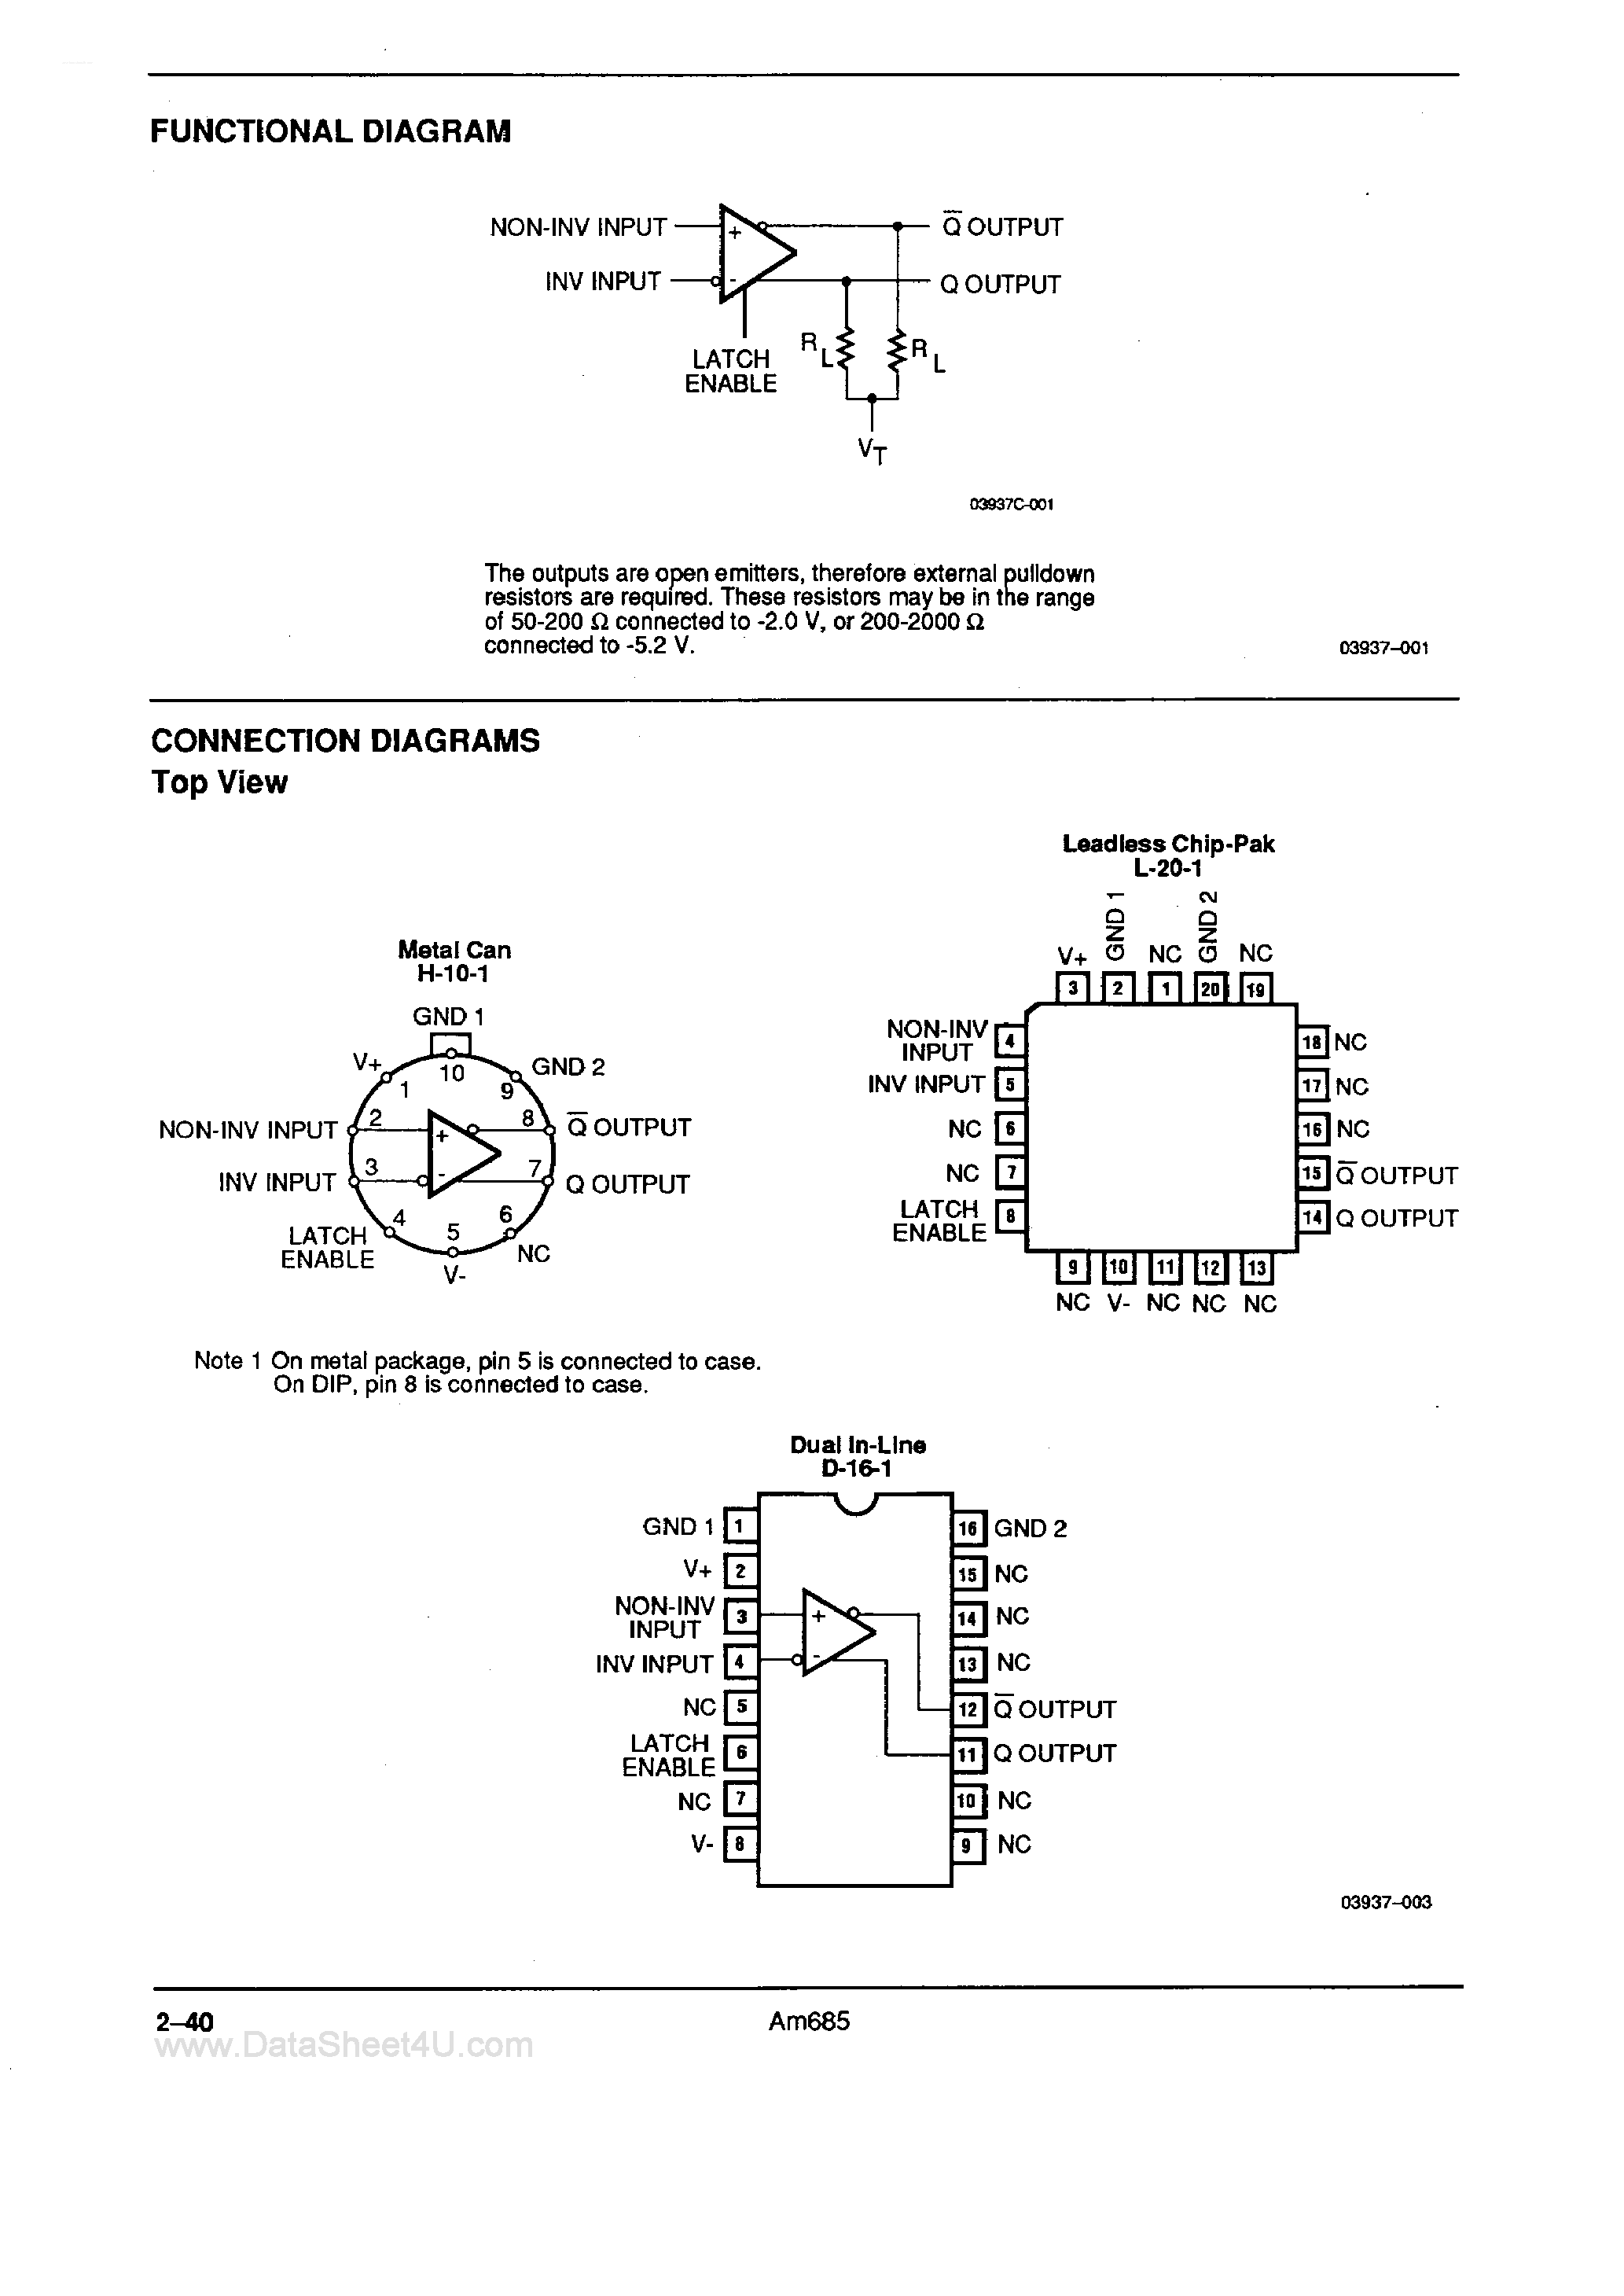 Даташит AM685 - Voltage Comparator страница 2